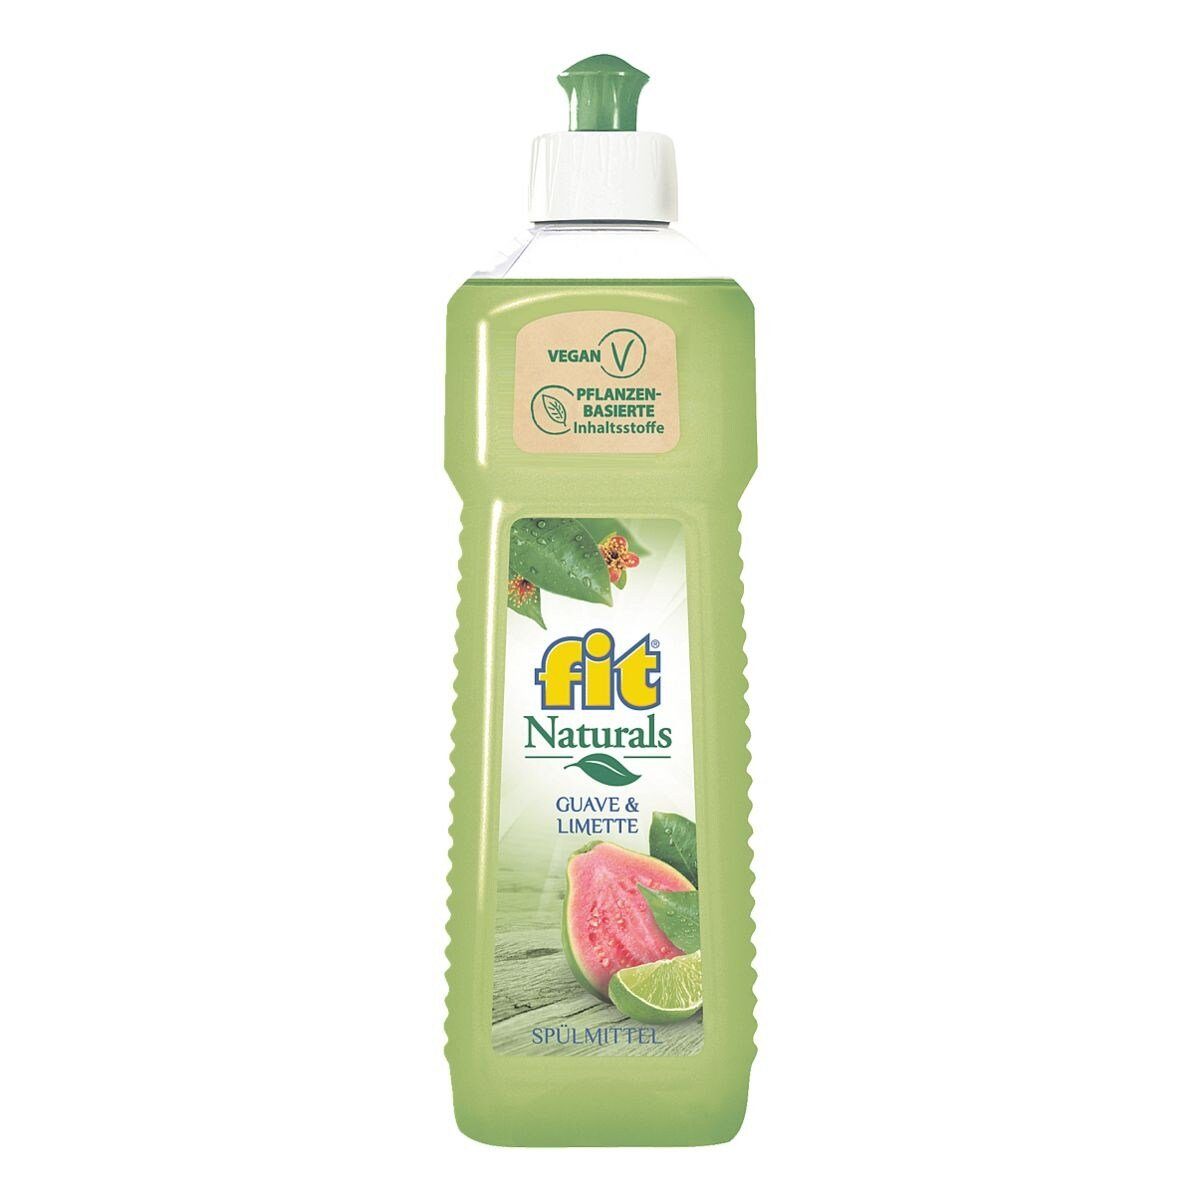 FIT GRUENEKRAFT Naturals Guave & Limette Geschirrspülmittel (500 ml, pH- neutral, hautschonend, vegan)